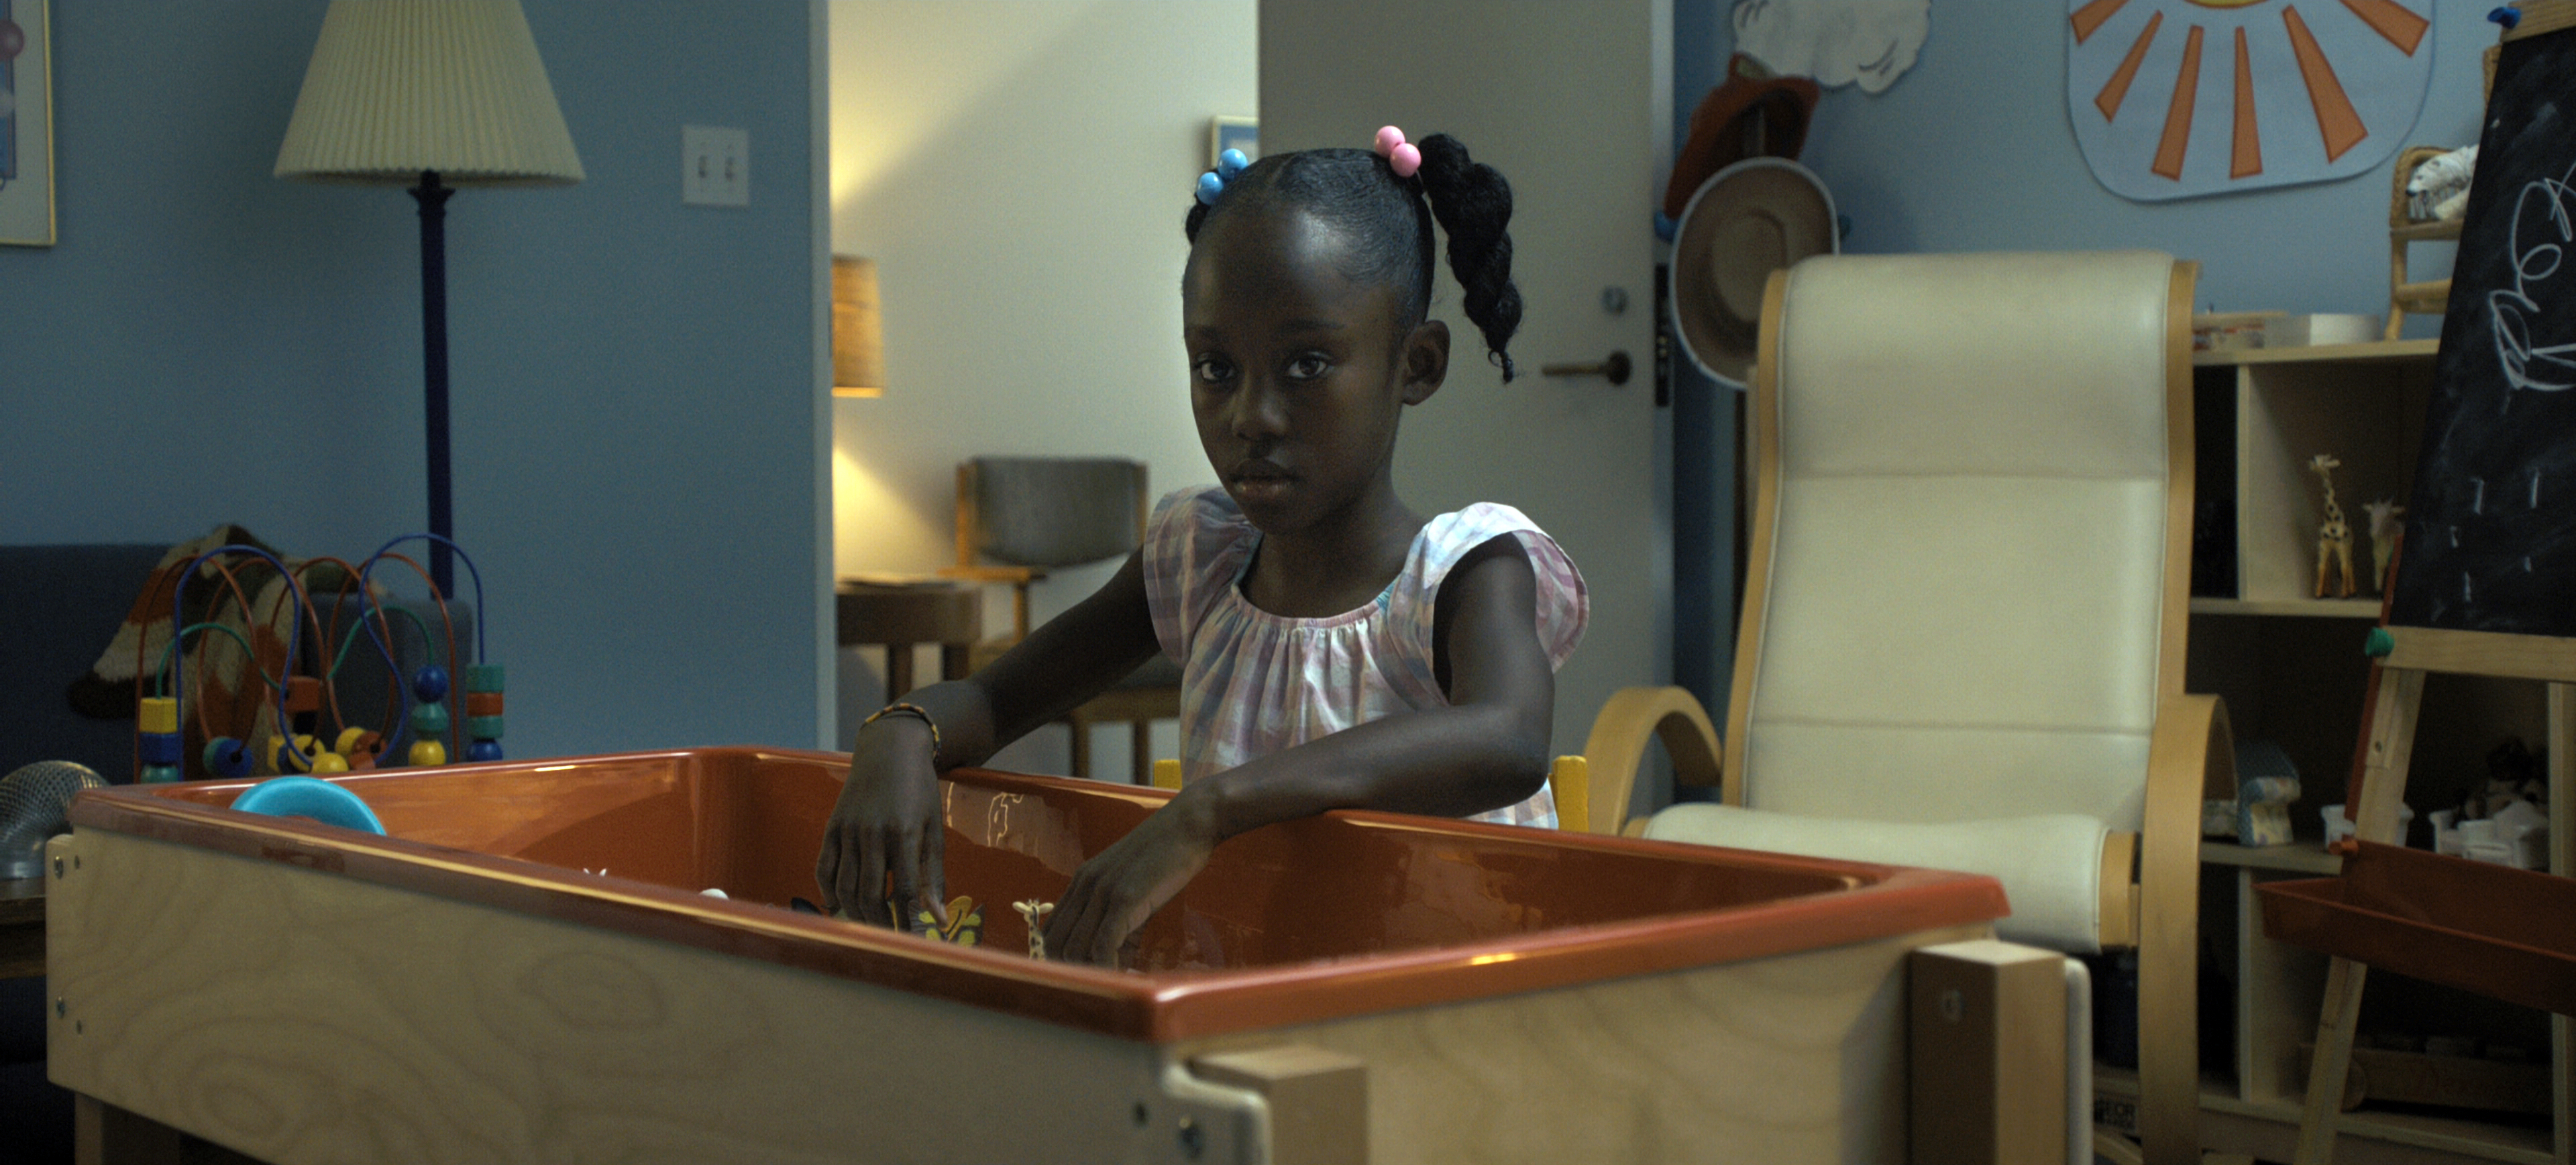 Чернокожая девочка в детской комнате, Стол с игрушками, Детский возраст